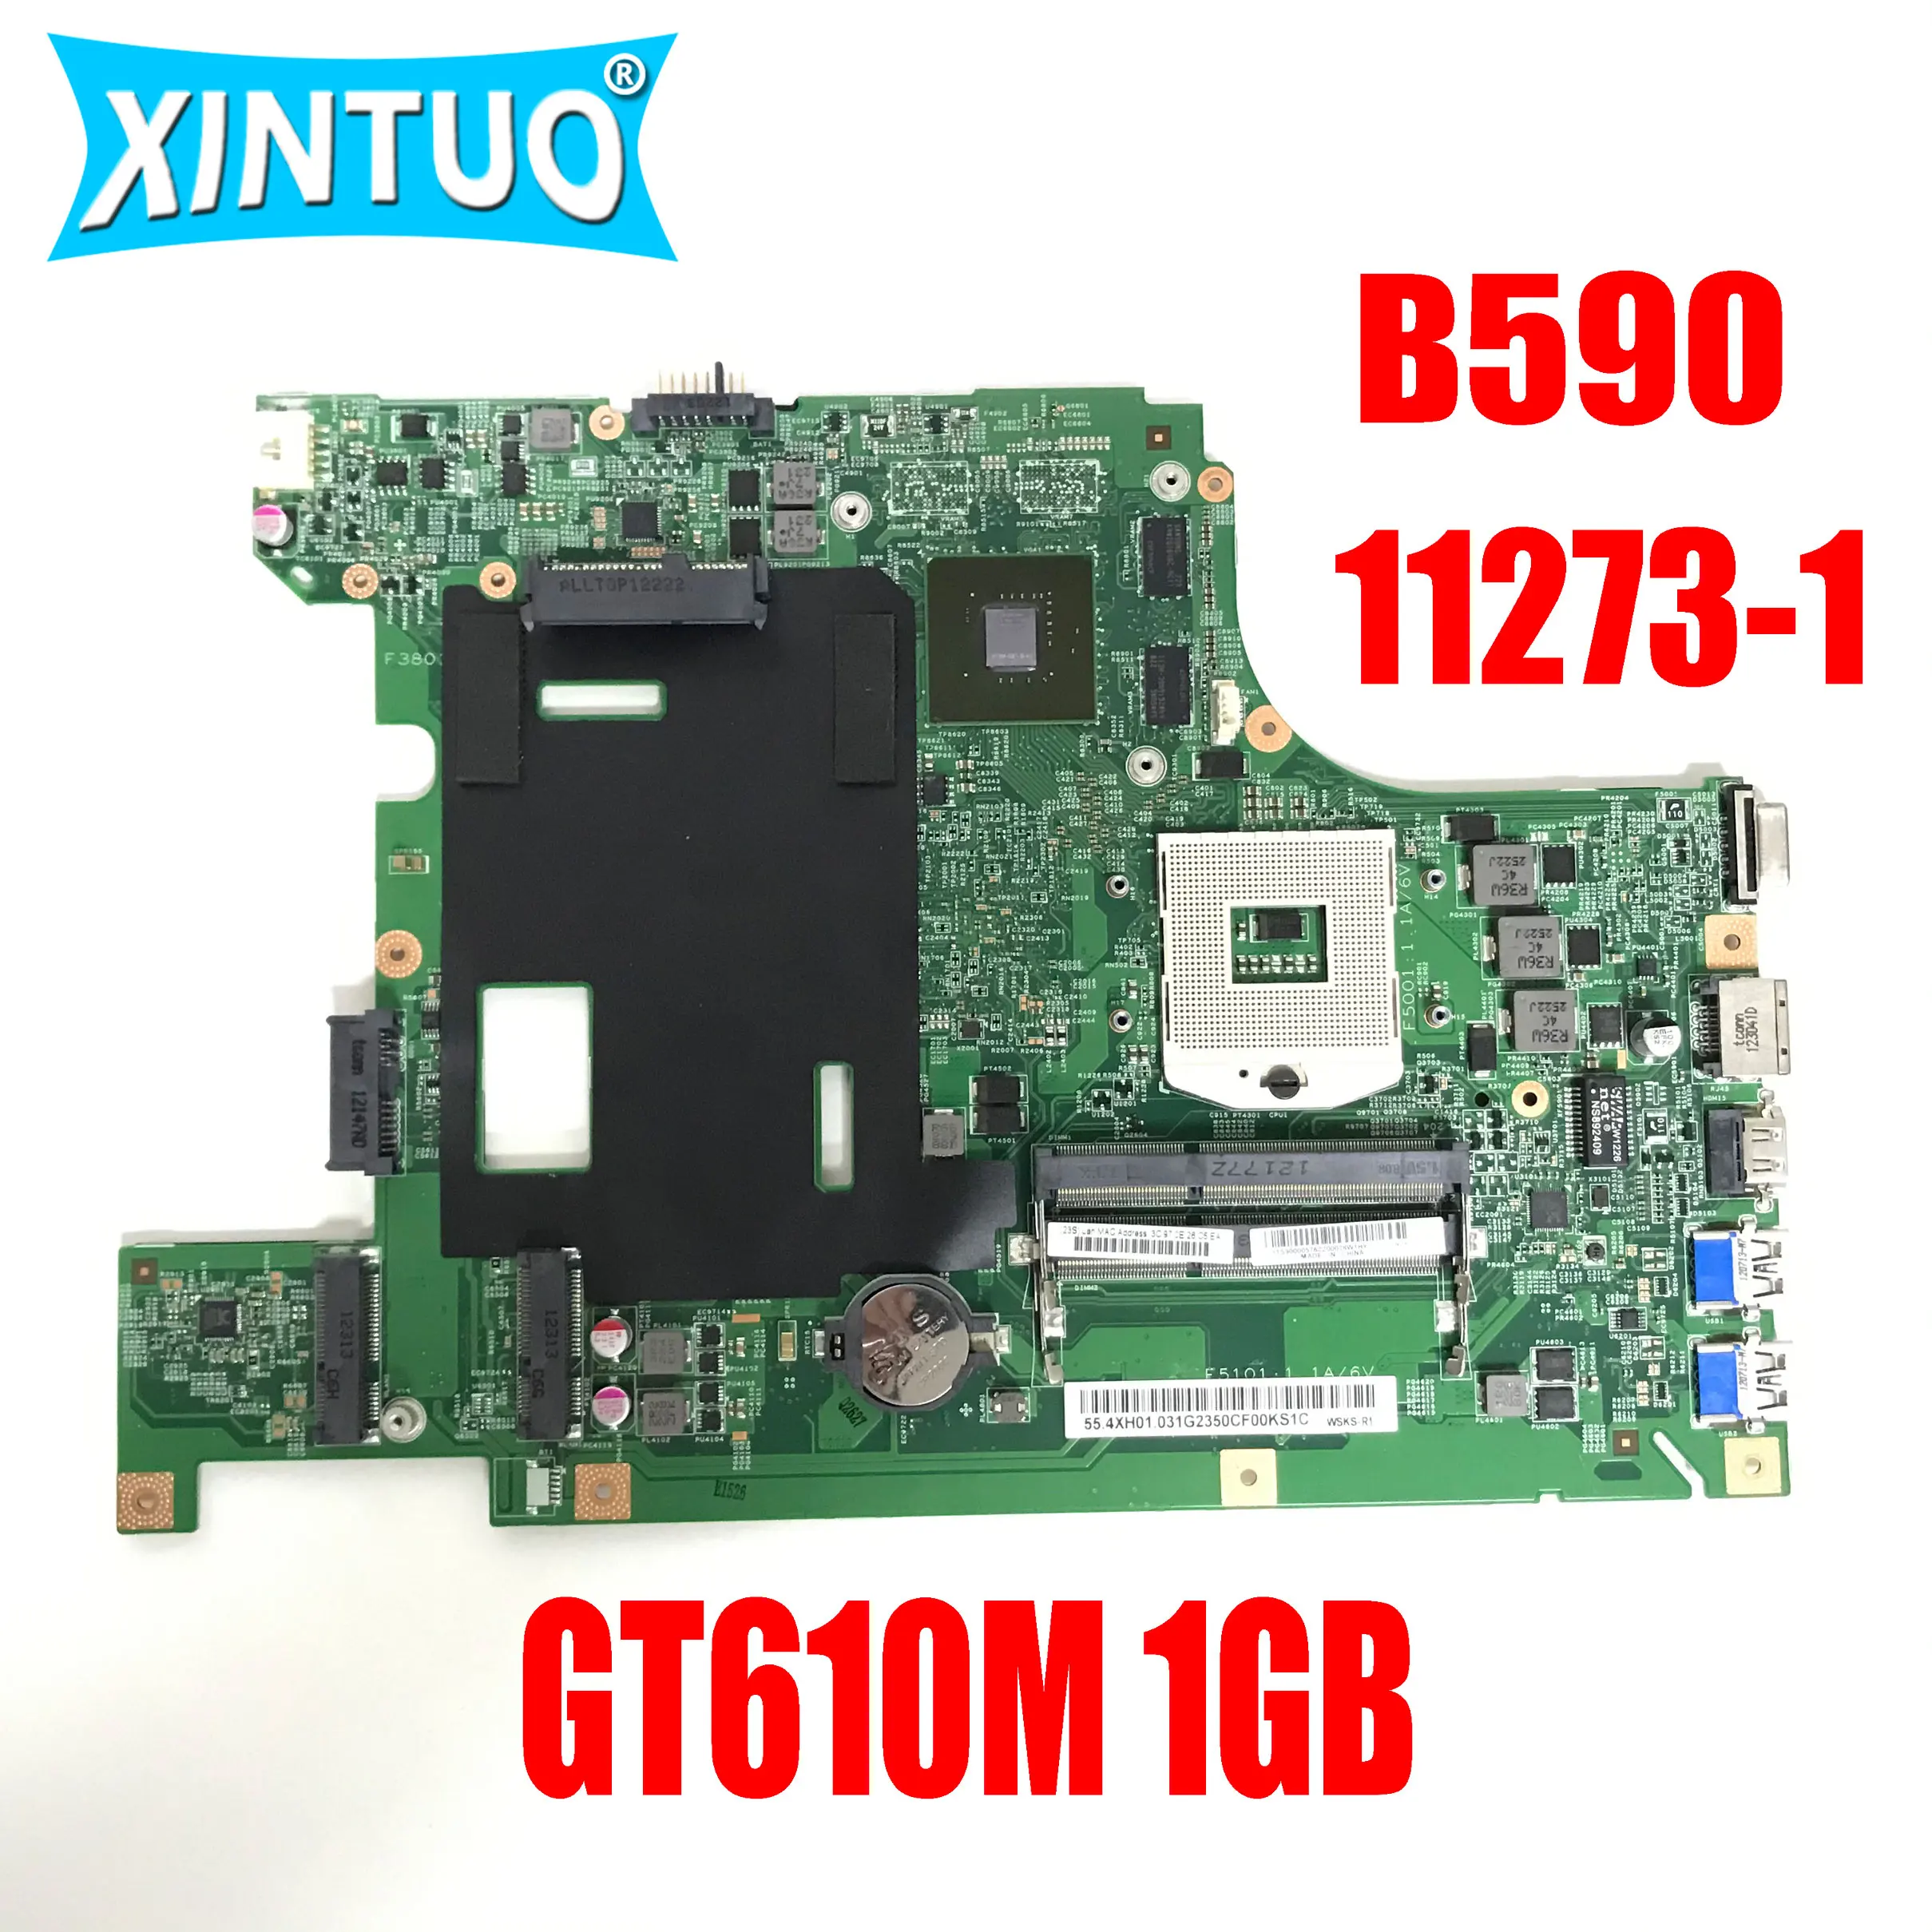 11273-1 za LENOVO B590 B580 V580C matična ploča laptopa sa GT610M 1 GB GPU DDR3 100% ispitni rad